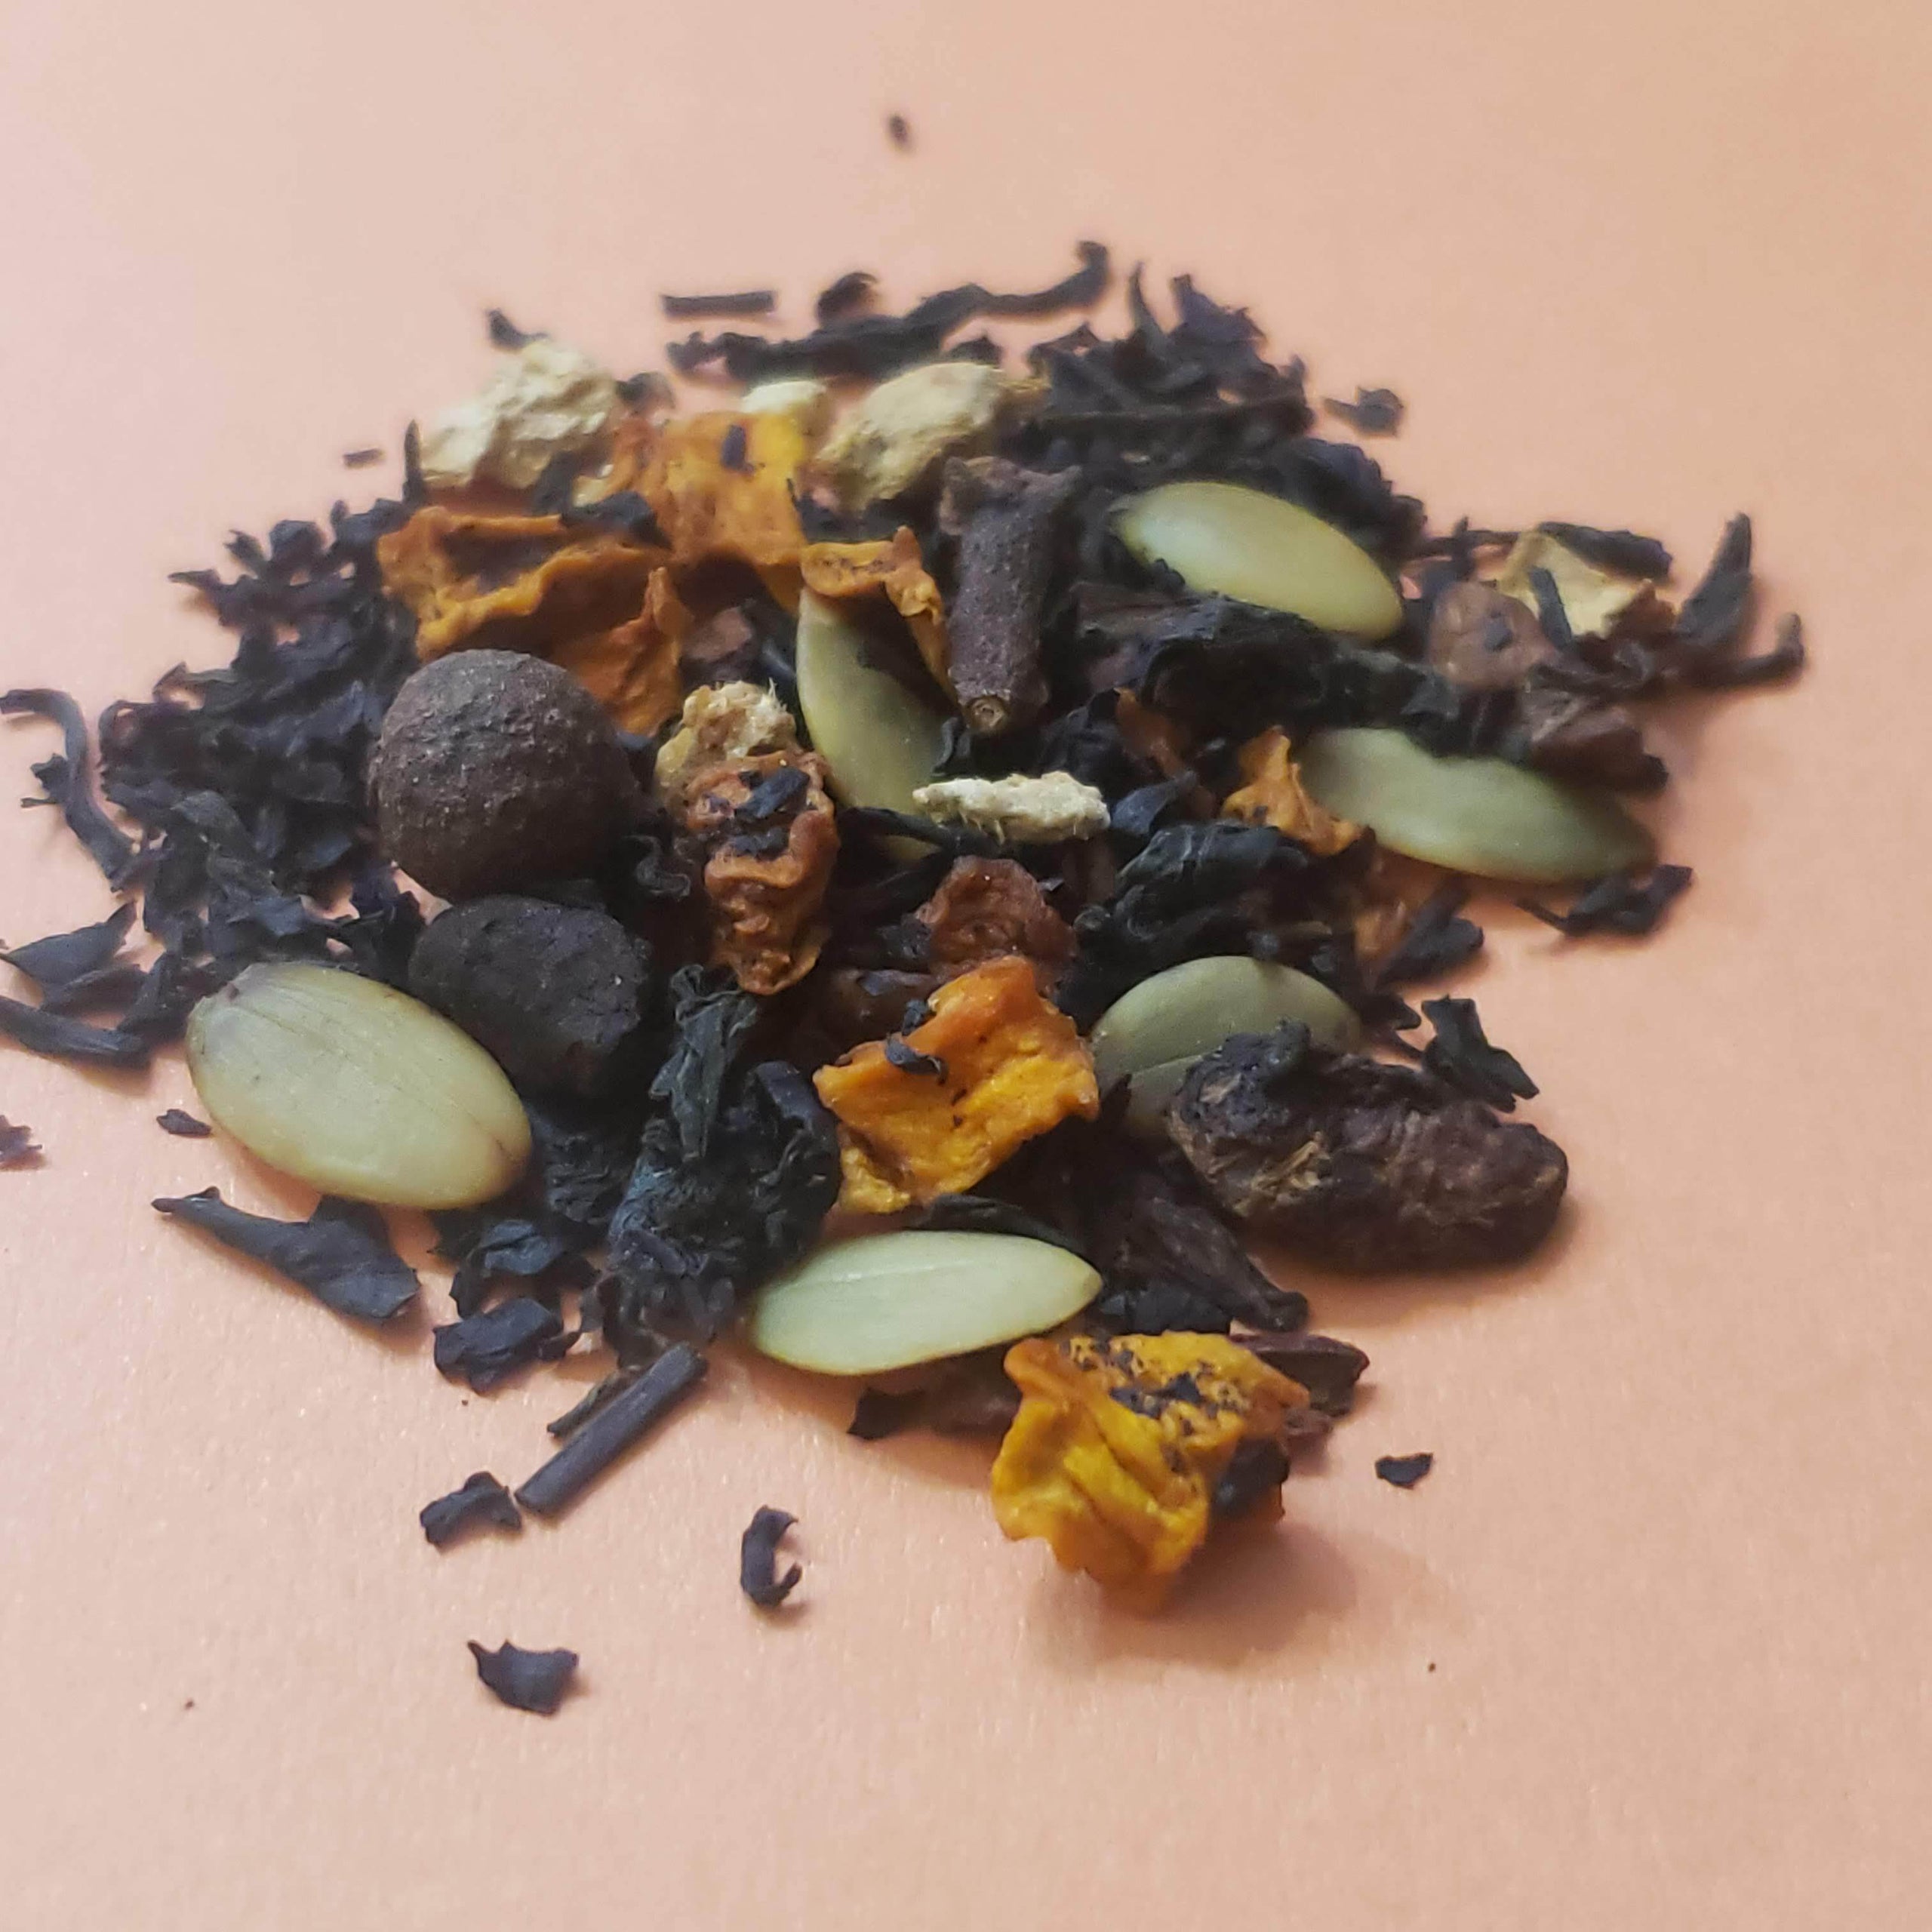 Pumpkin Spice Latte Kit - The Taste of Tea